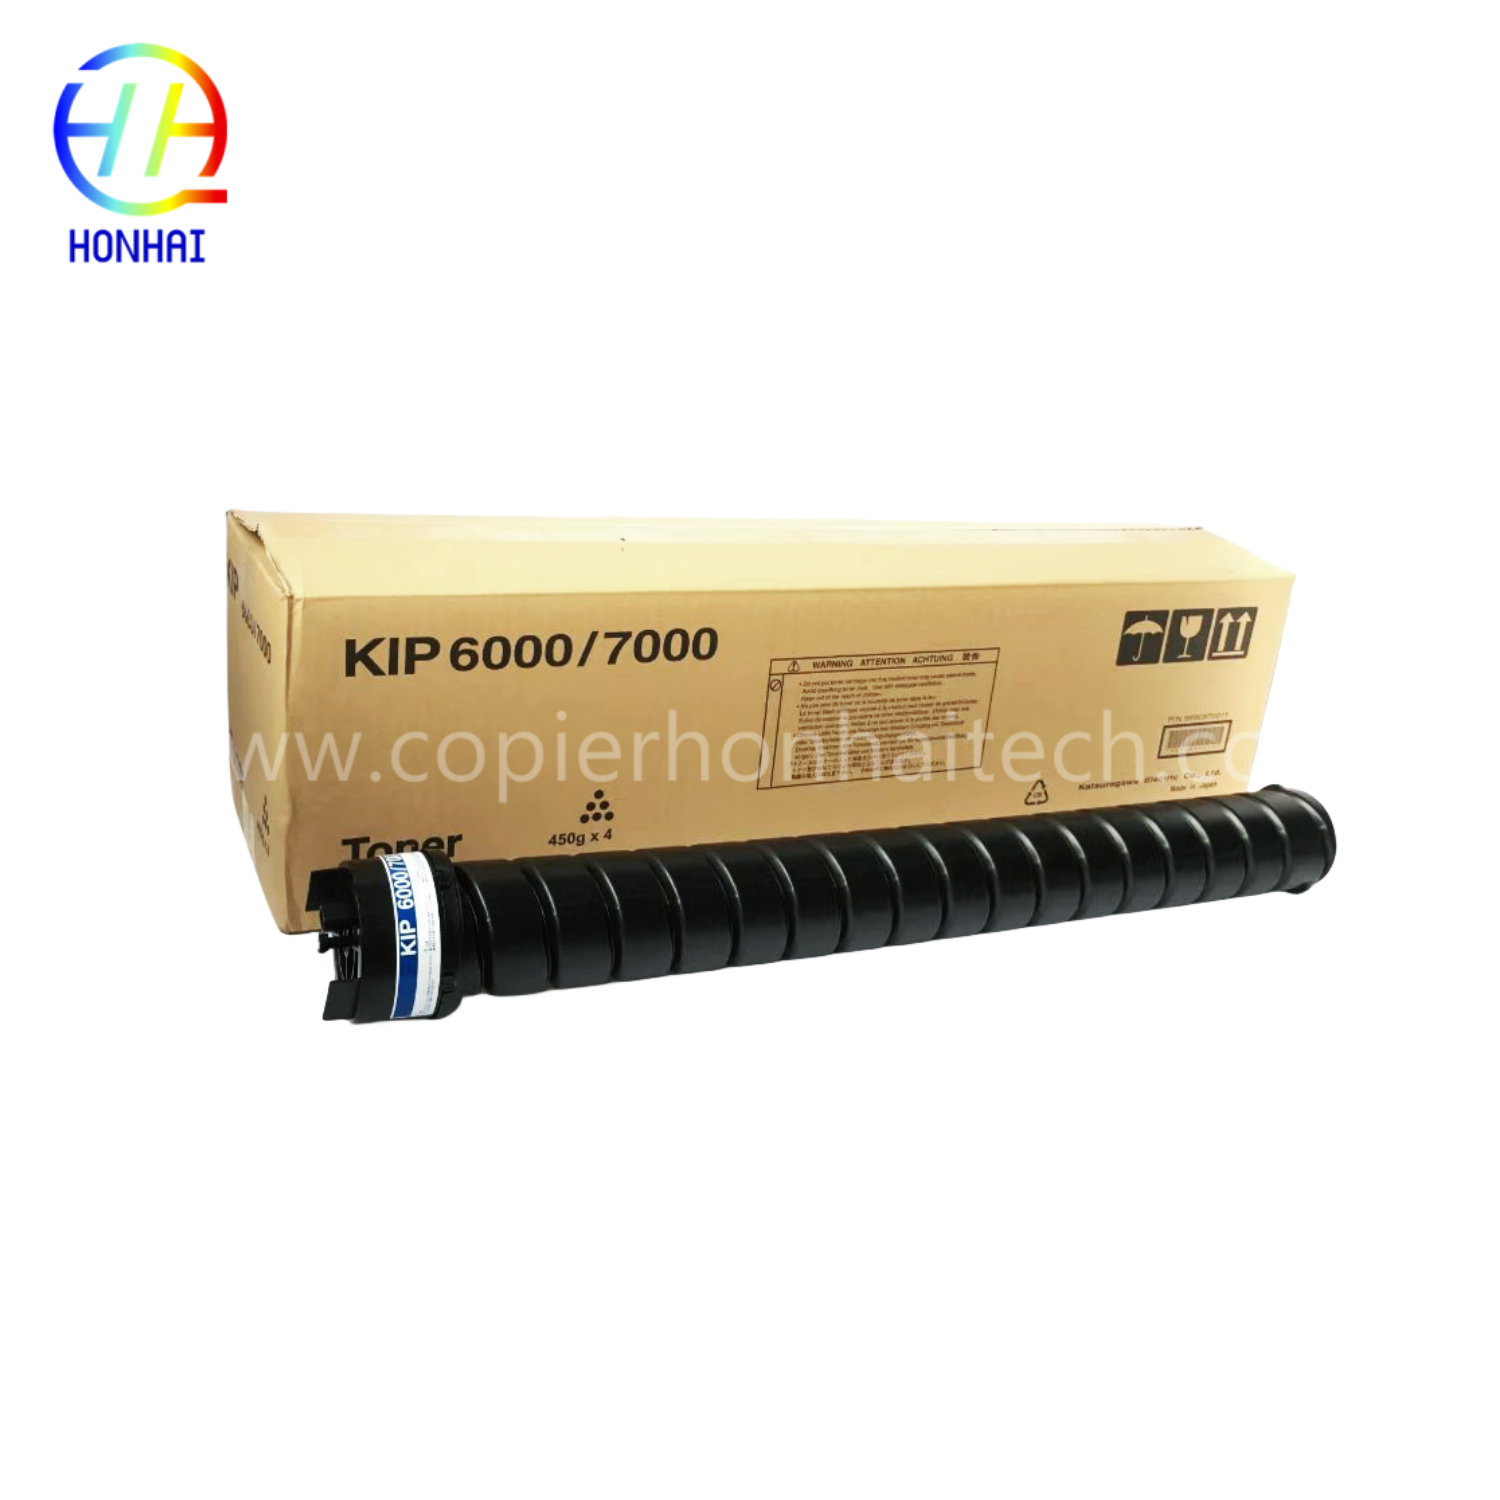 https://www.copierhonhaitech.com/toner-cartridge-voor-kip-6000-7000-cyaan-zwart-kip-toner-product/